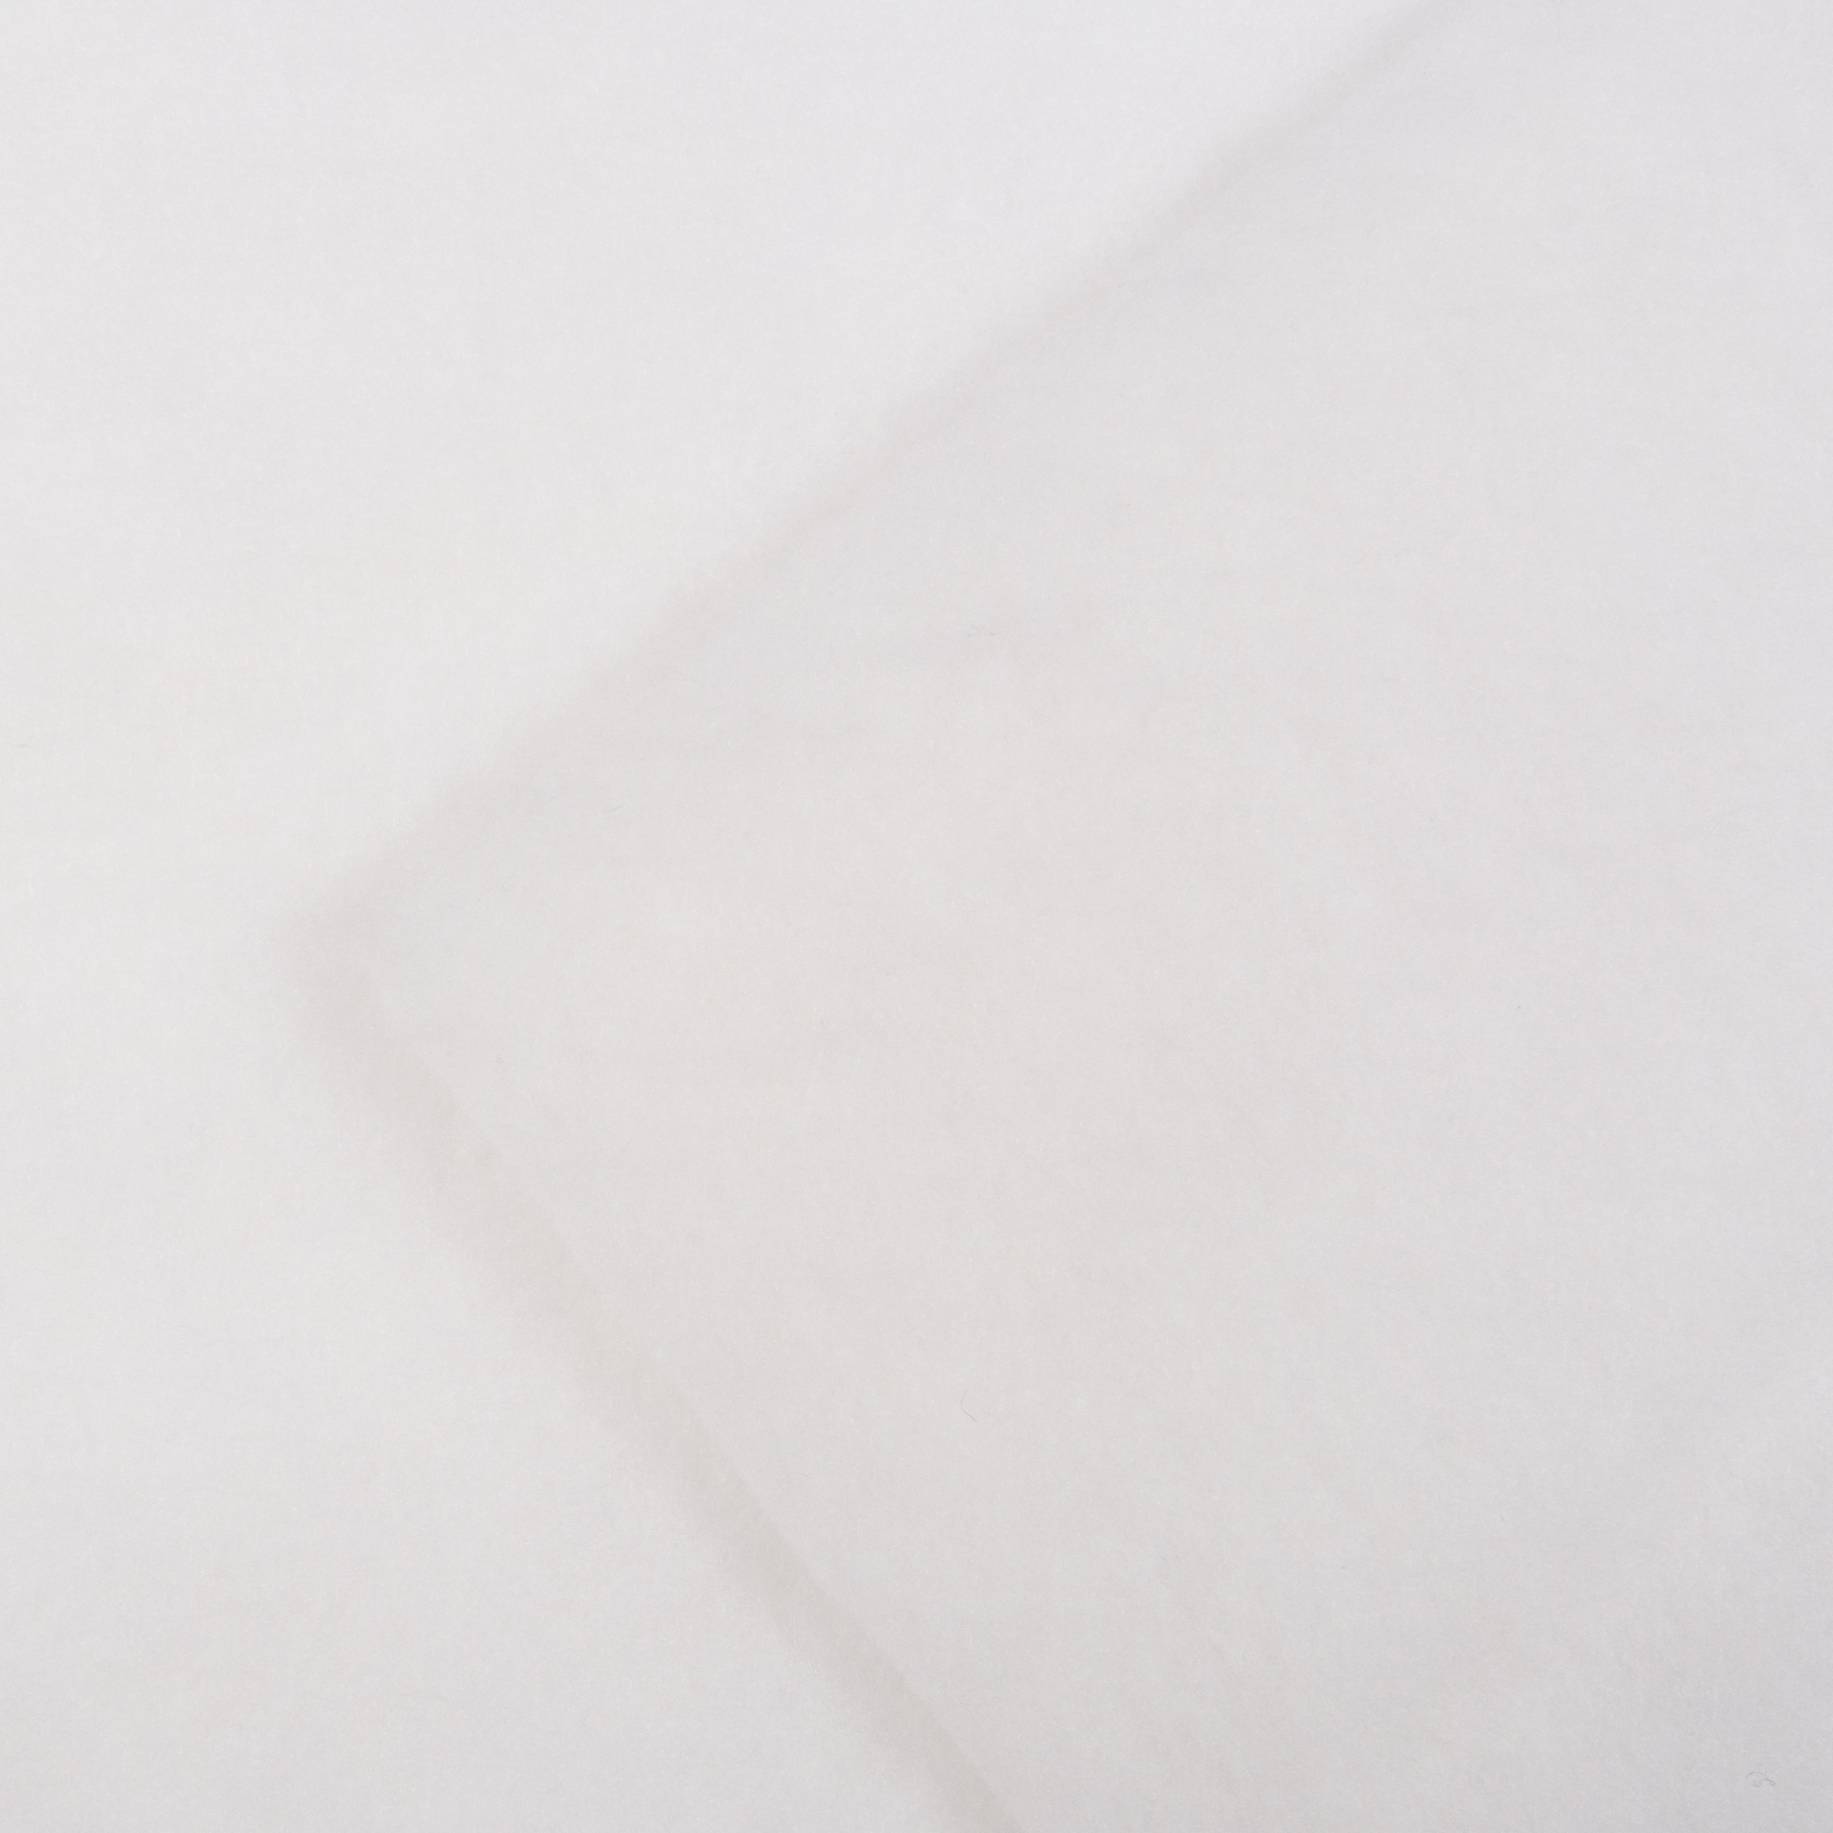 Синтепон швейный, полиэстер 100%, 150г/м, белый, 50x50 см